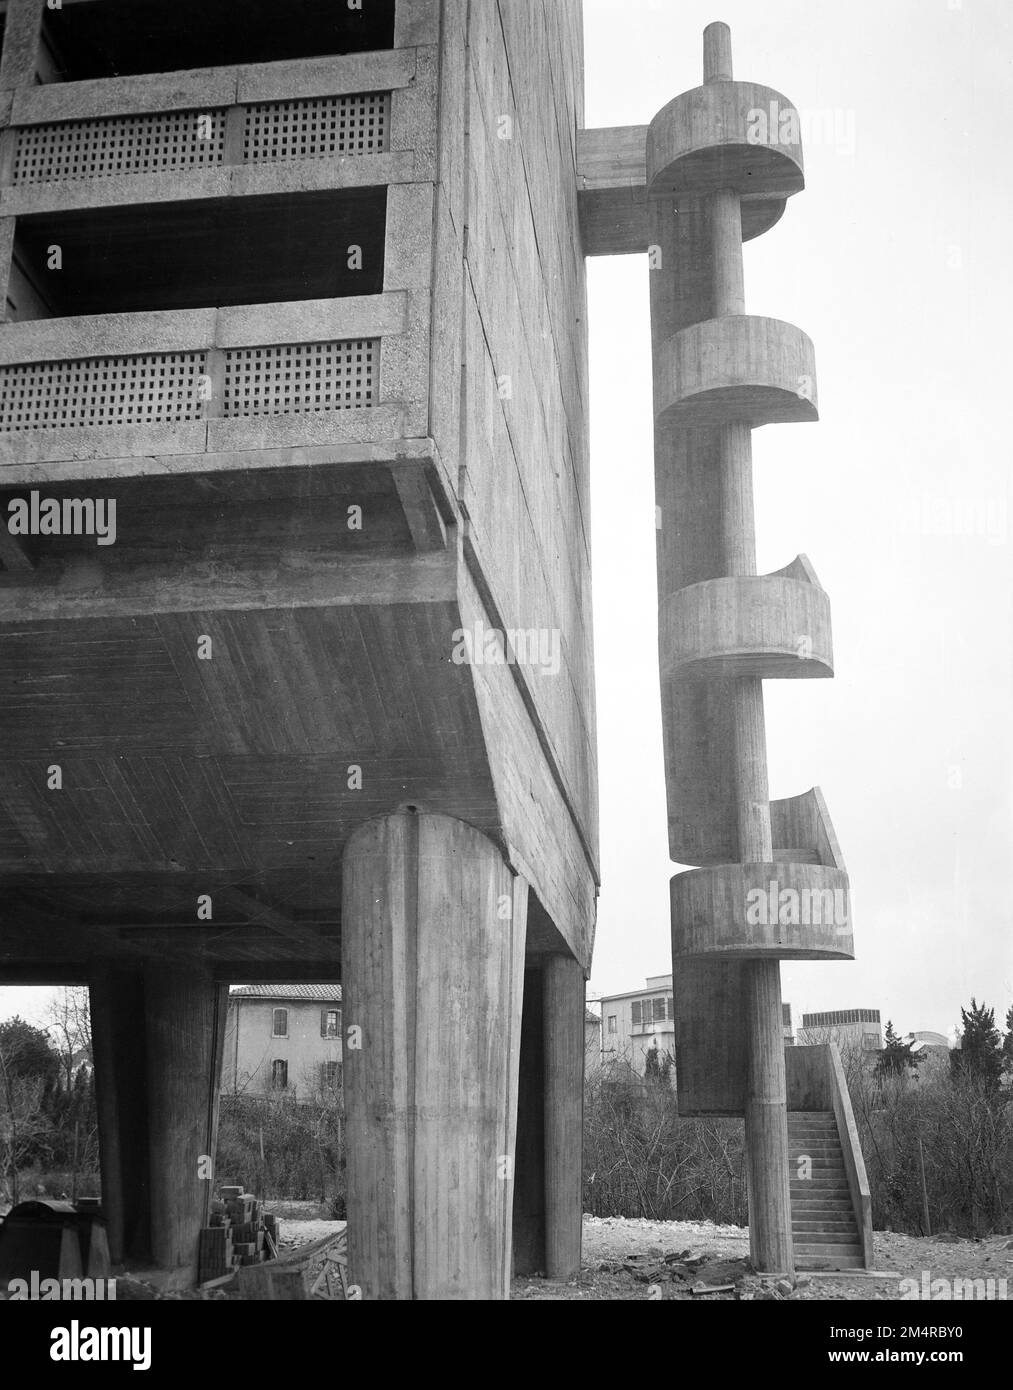 Projet de logement expérimental le Corbusier, Marseille. Photographies des programmes du Plan Marshall, des pièces justificatives et du personnel Banque D'Images